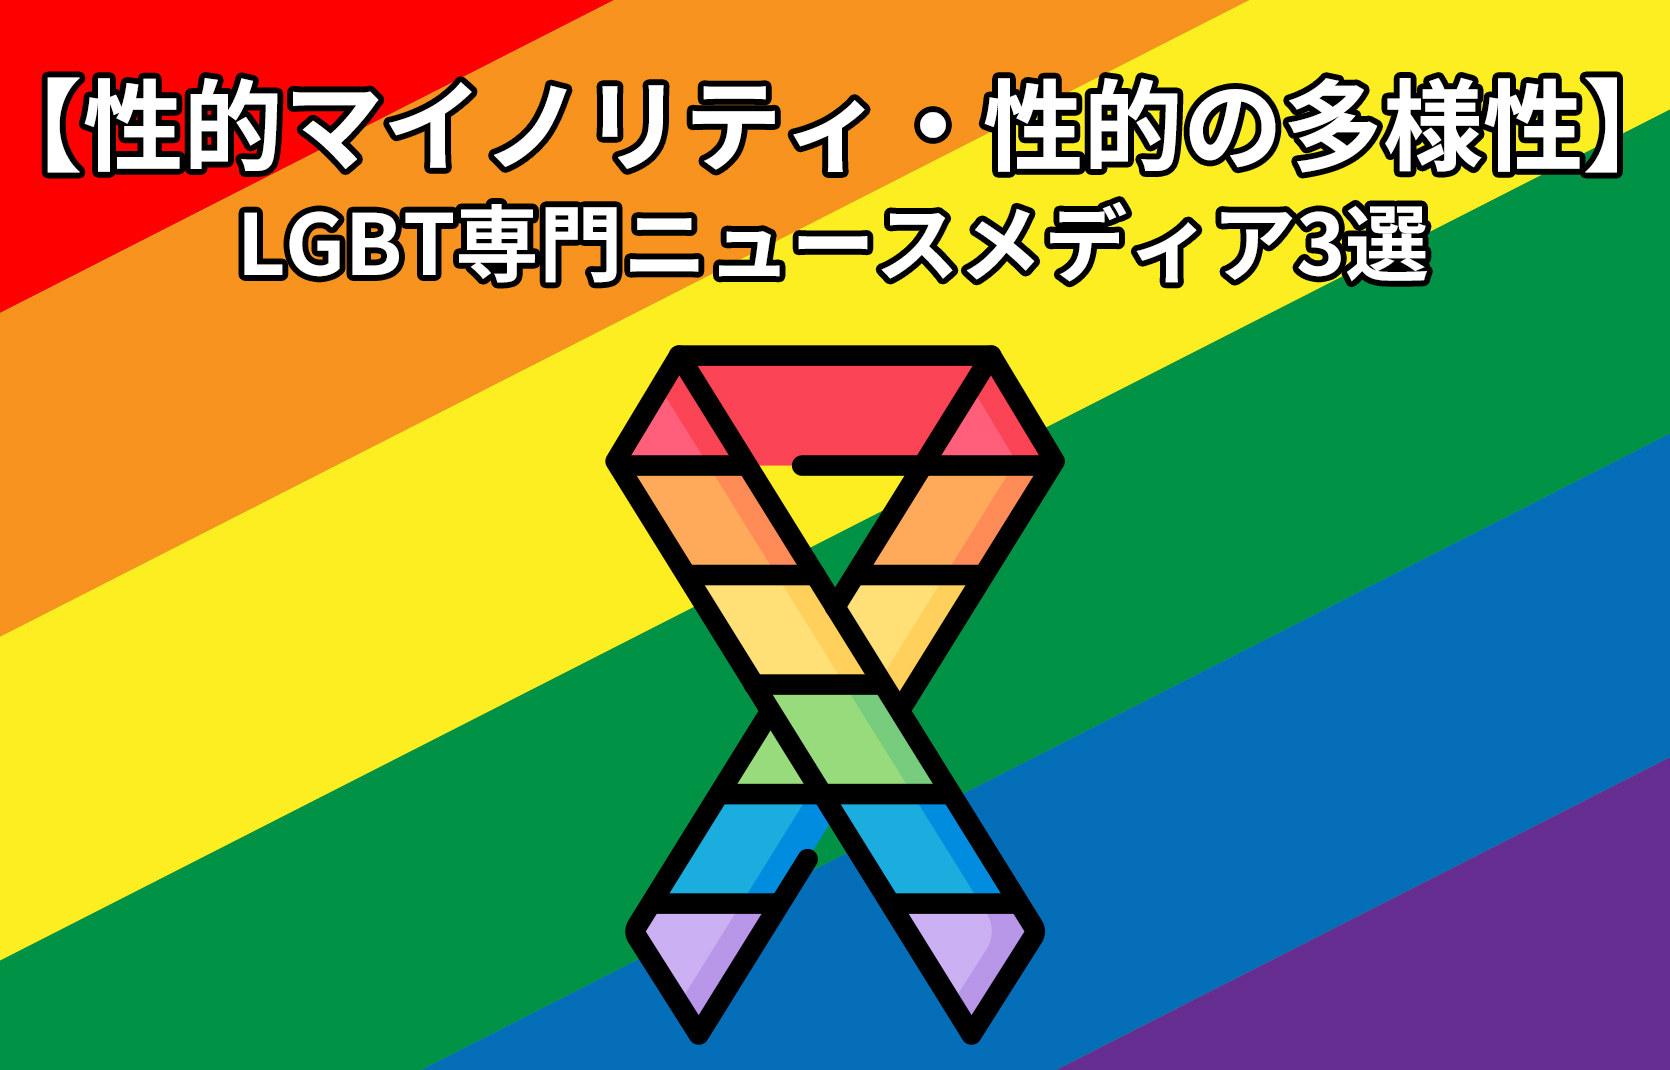 【性的マイノリティ・性の多様性】LGBT専門ニュースメディア3選